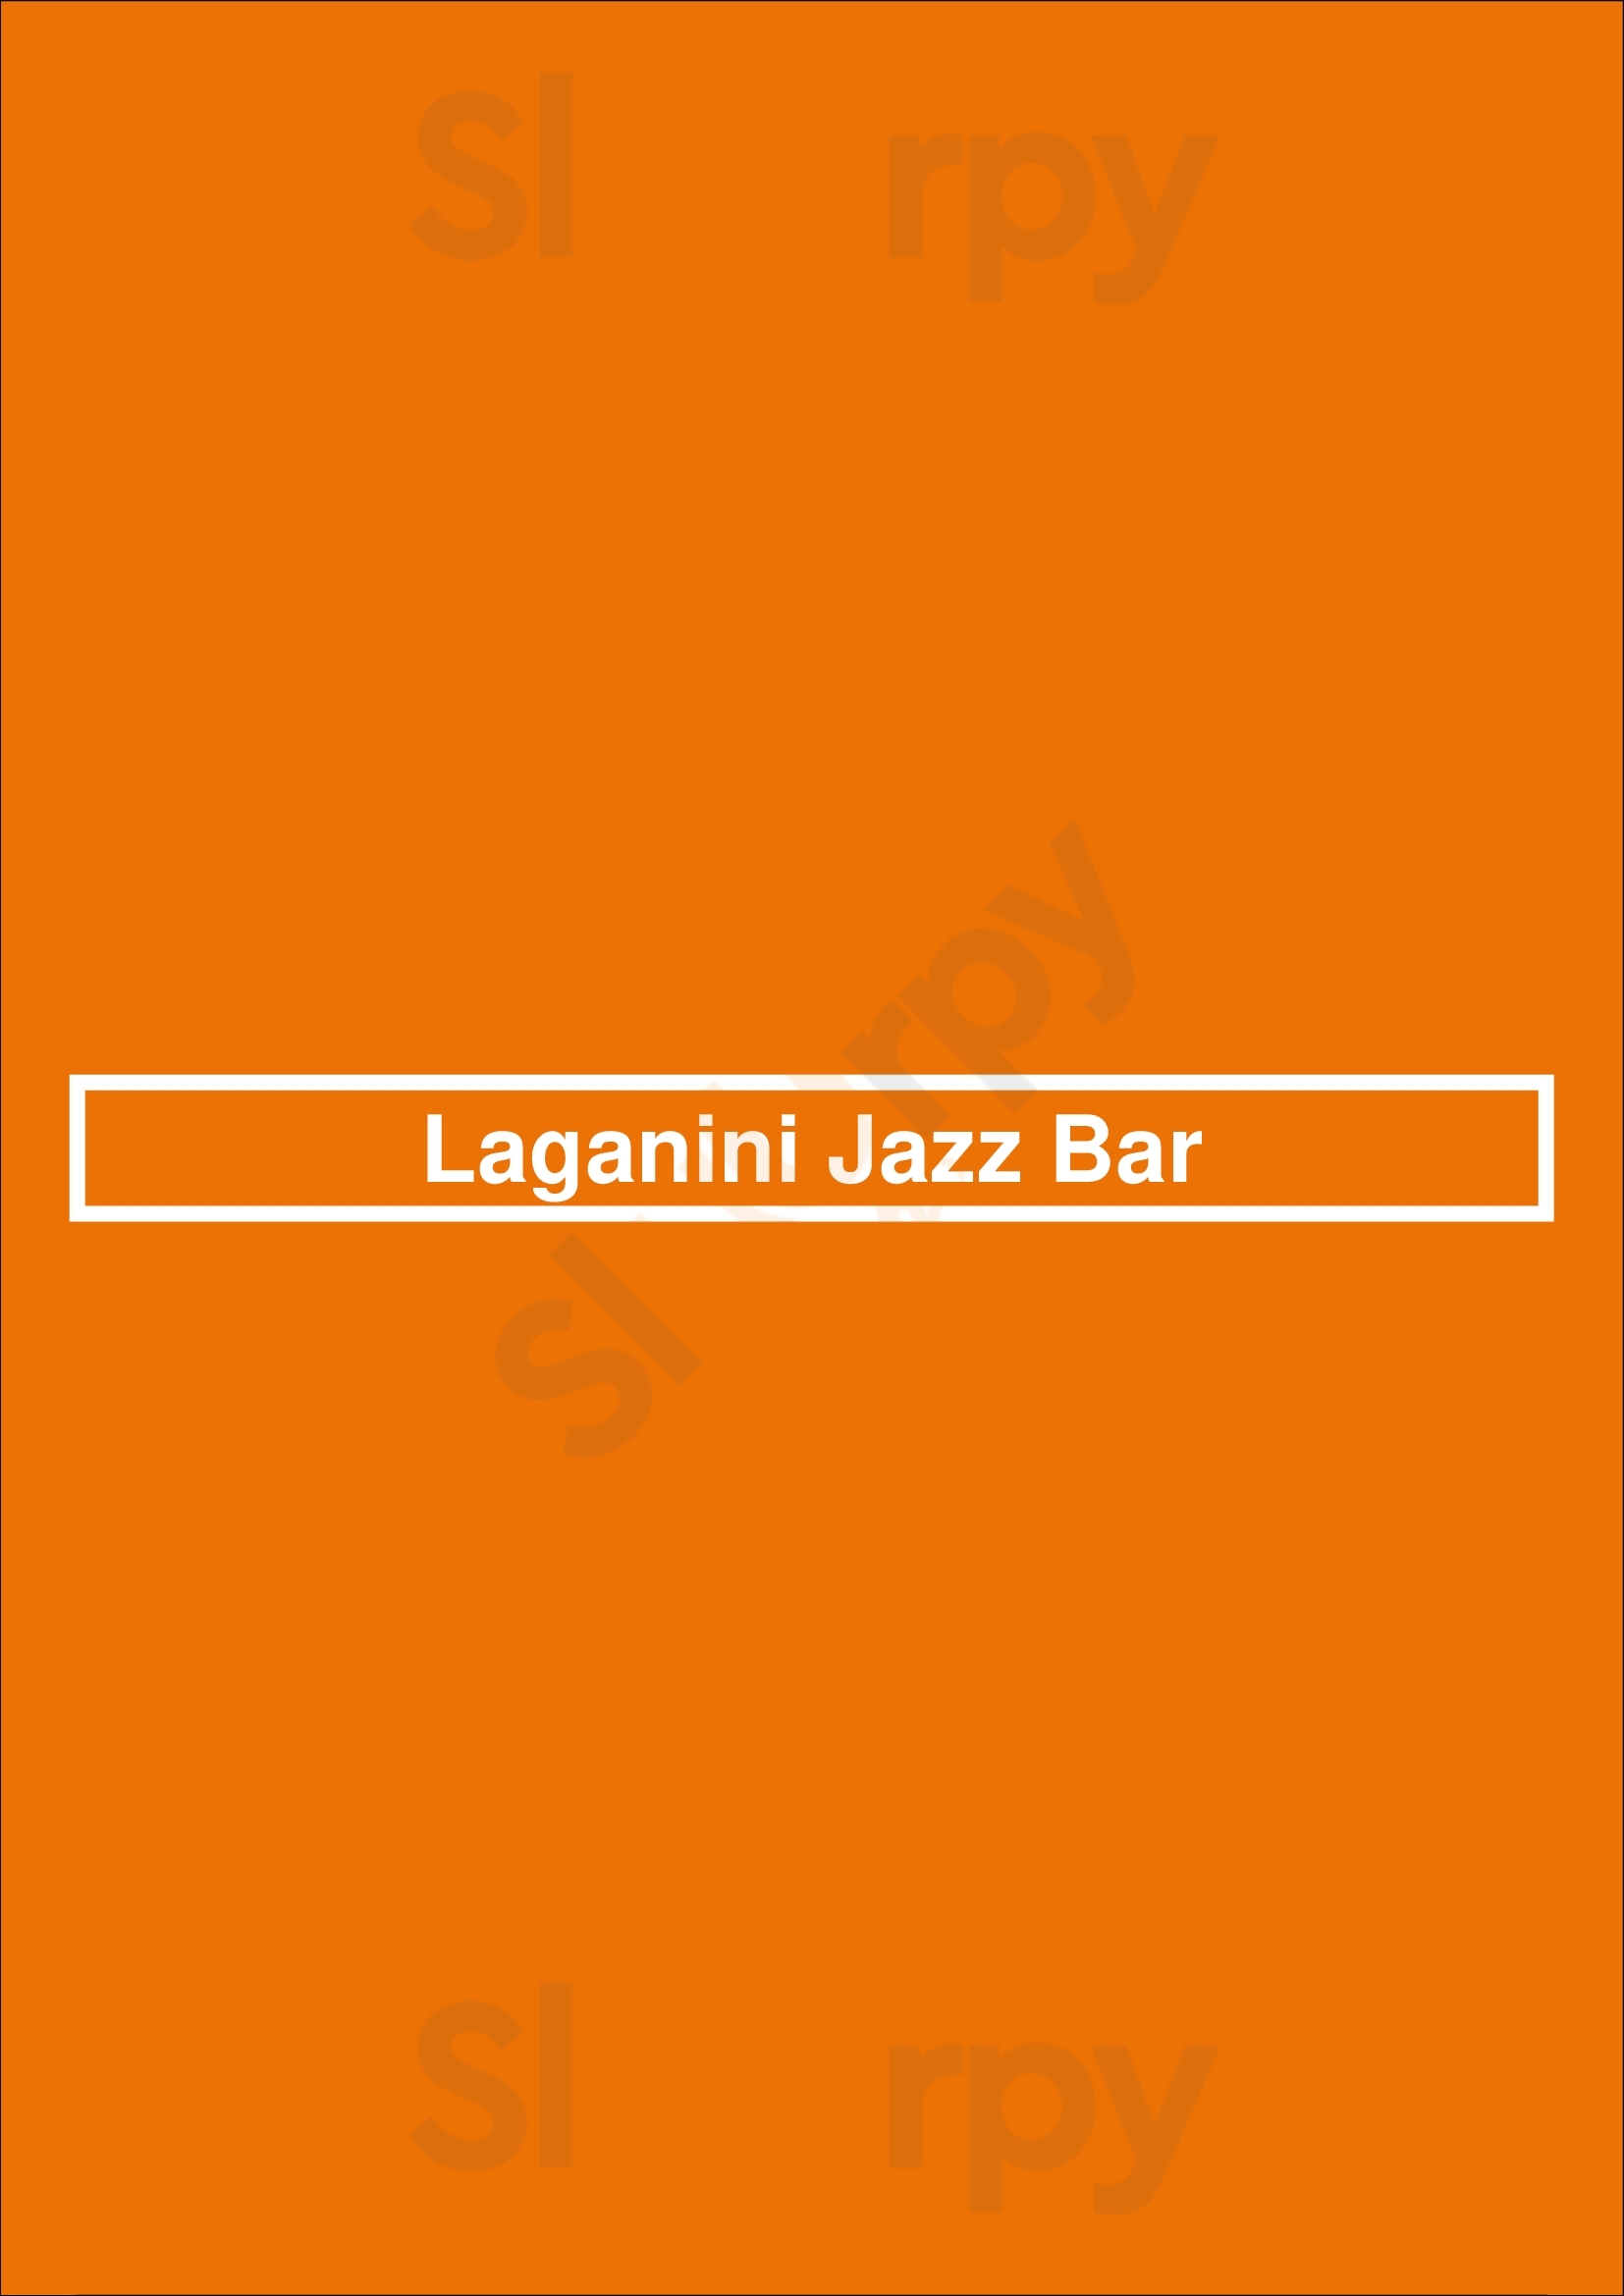 Laganini Jazz Bar Buenos Aires Menu - 1